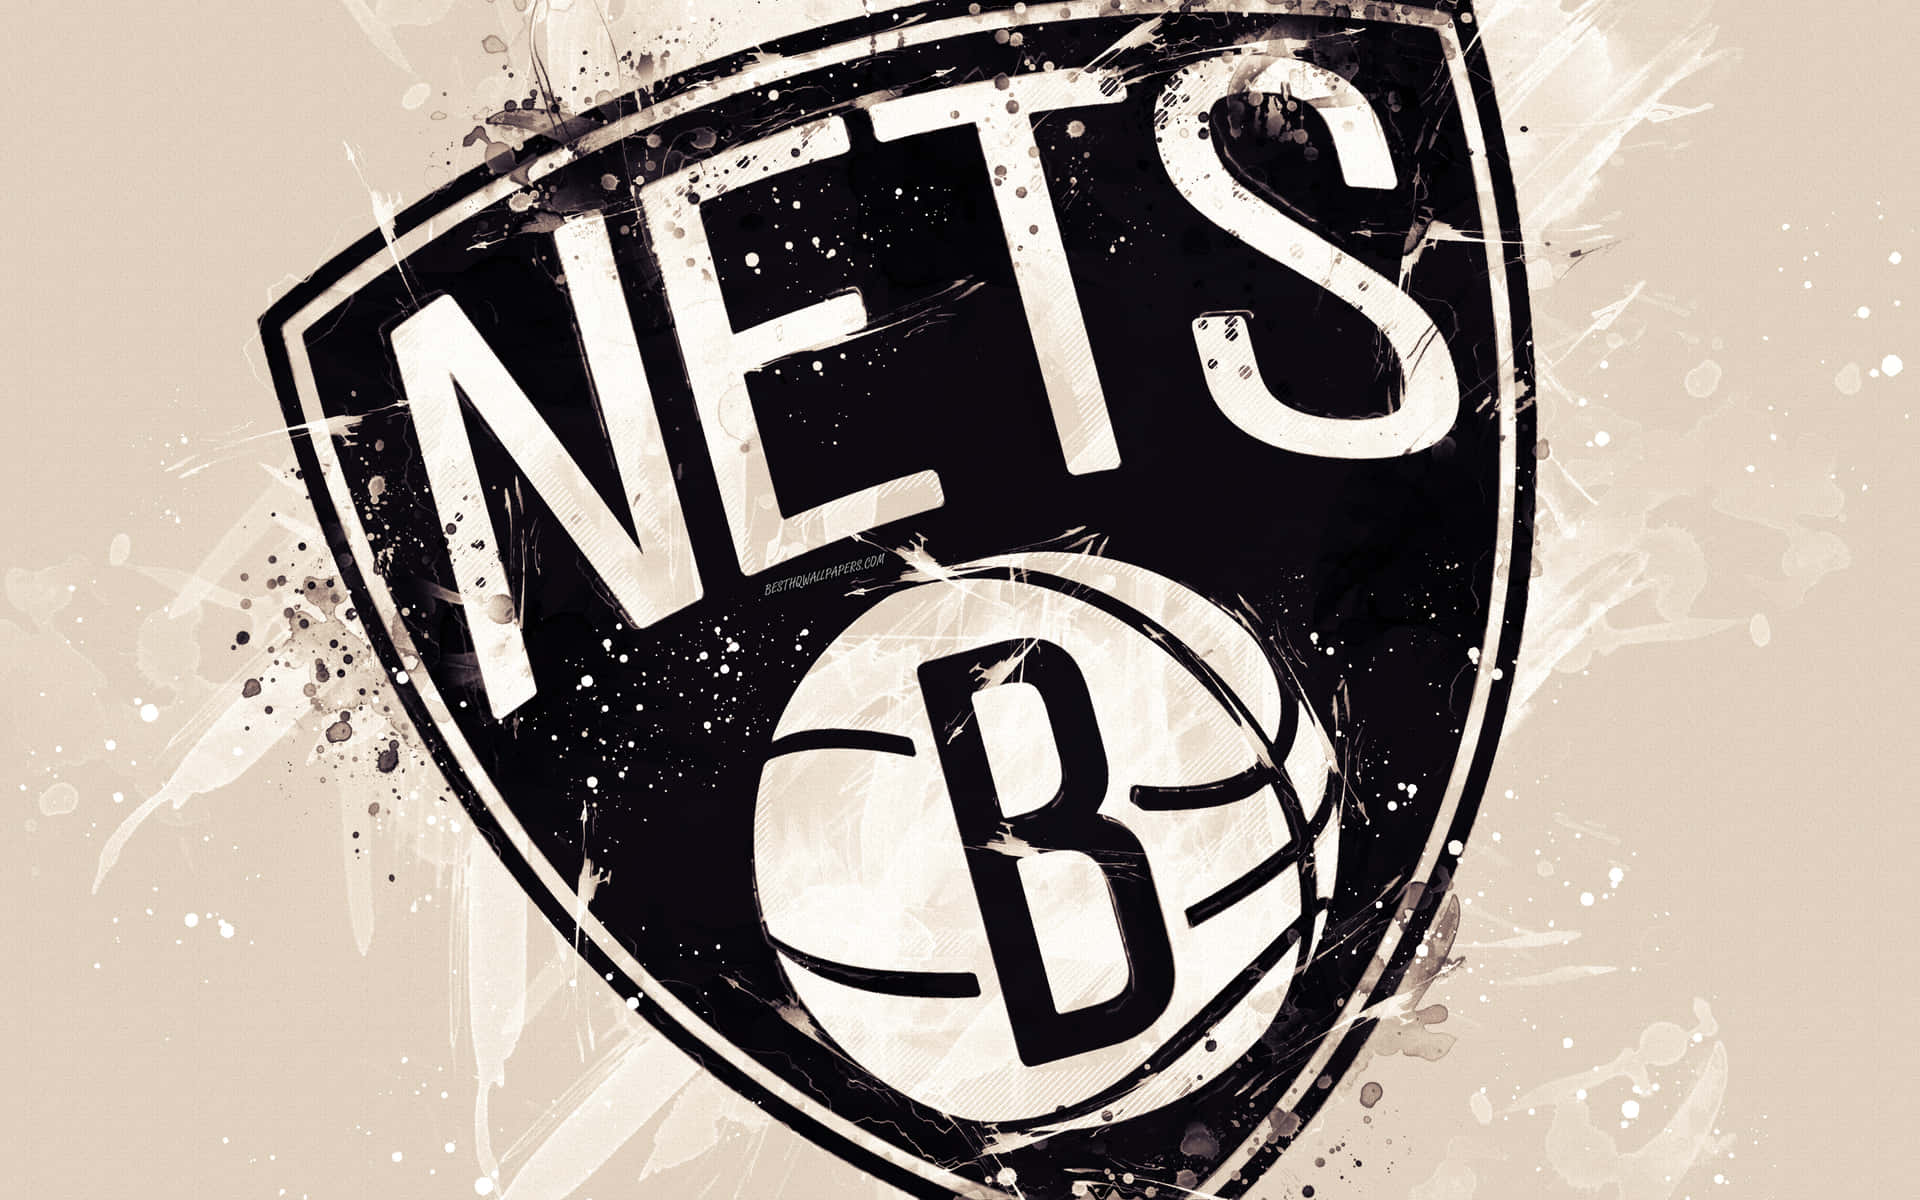 Repräsentieredein Team Mit Stil Mit Brooklyn Nets Kleidung.